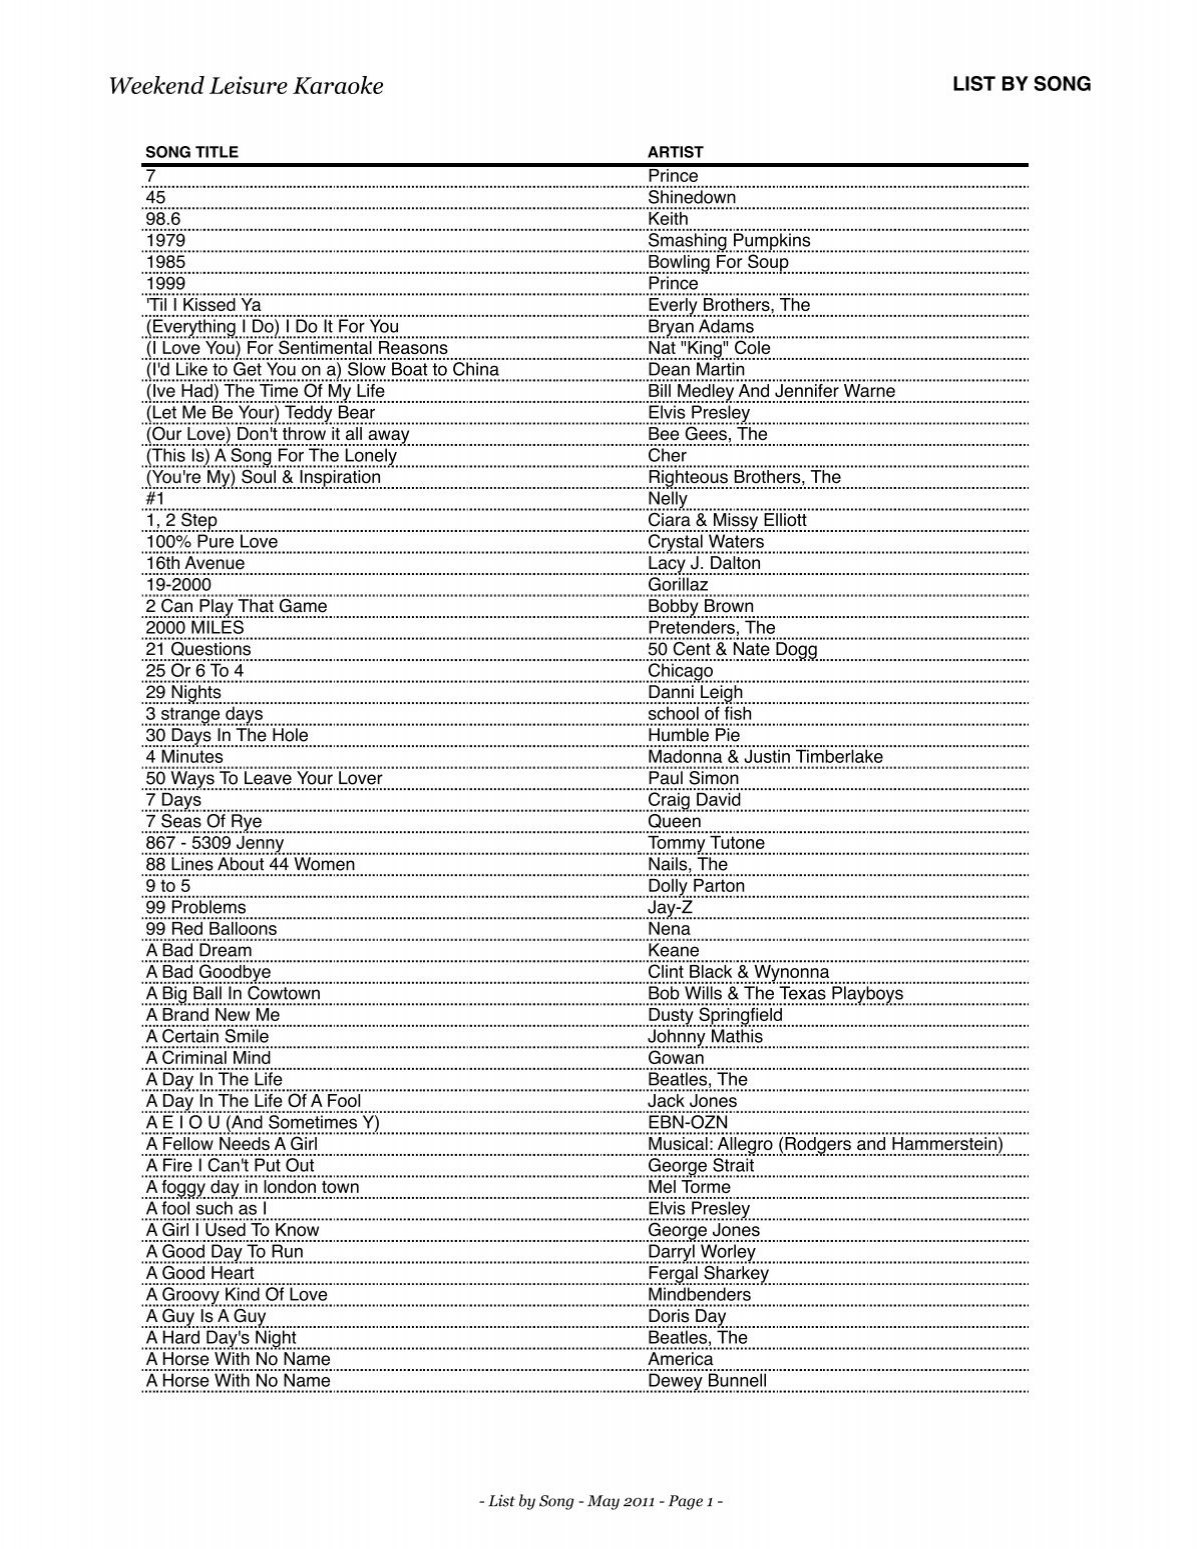 Zeus Karaoke Song List - 091109 - updated Mar 2011.xlsx